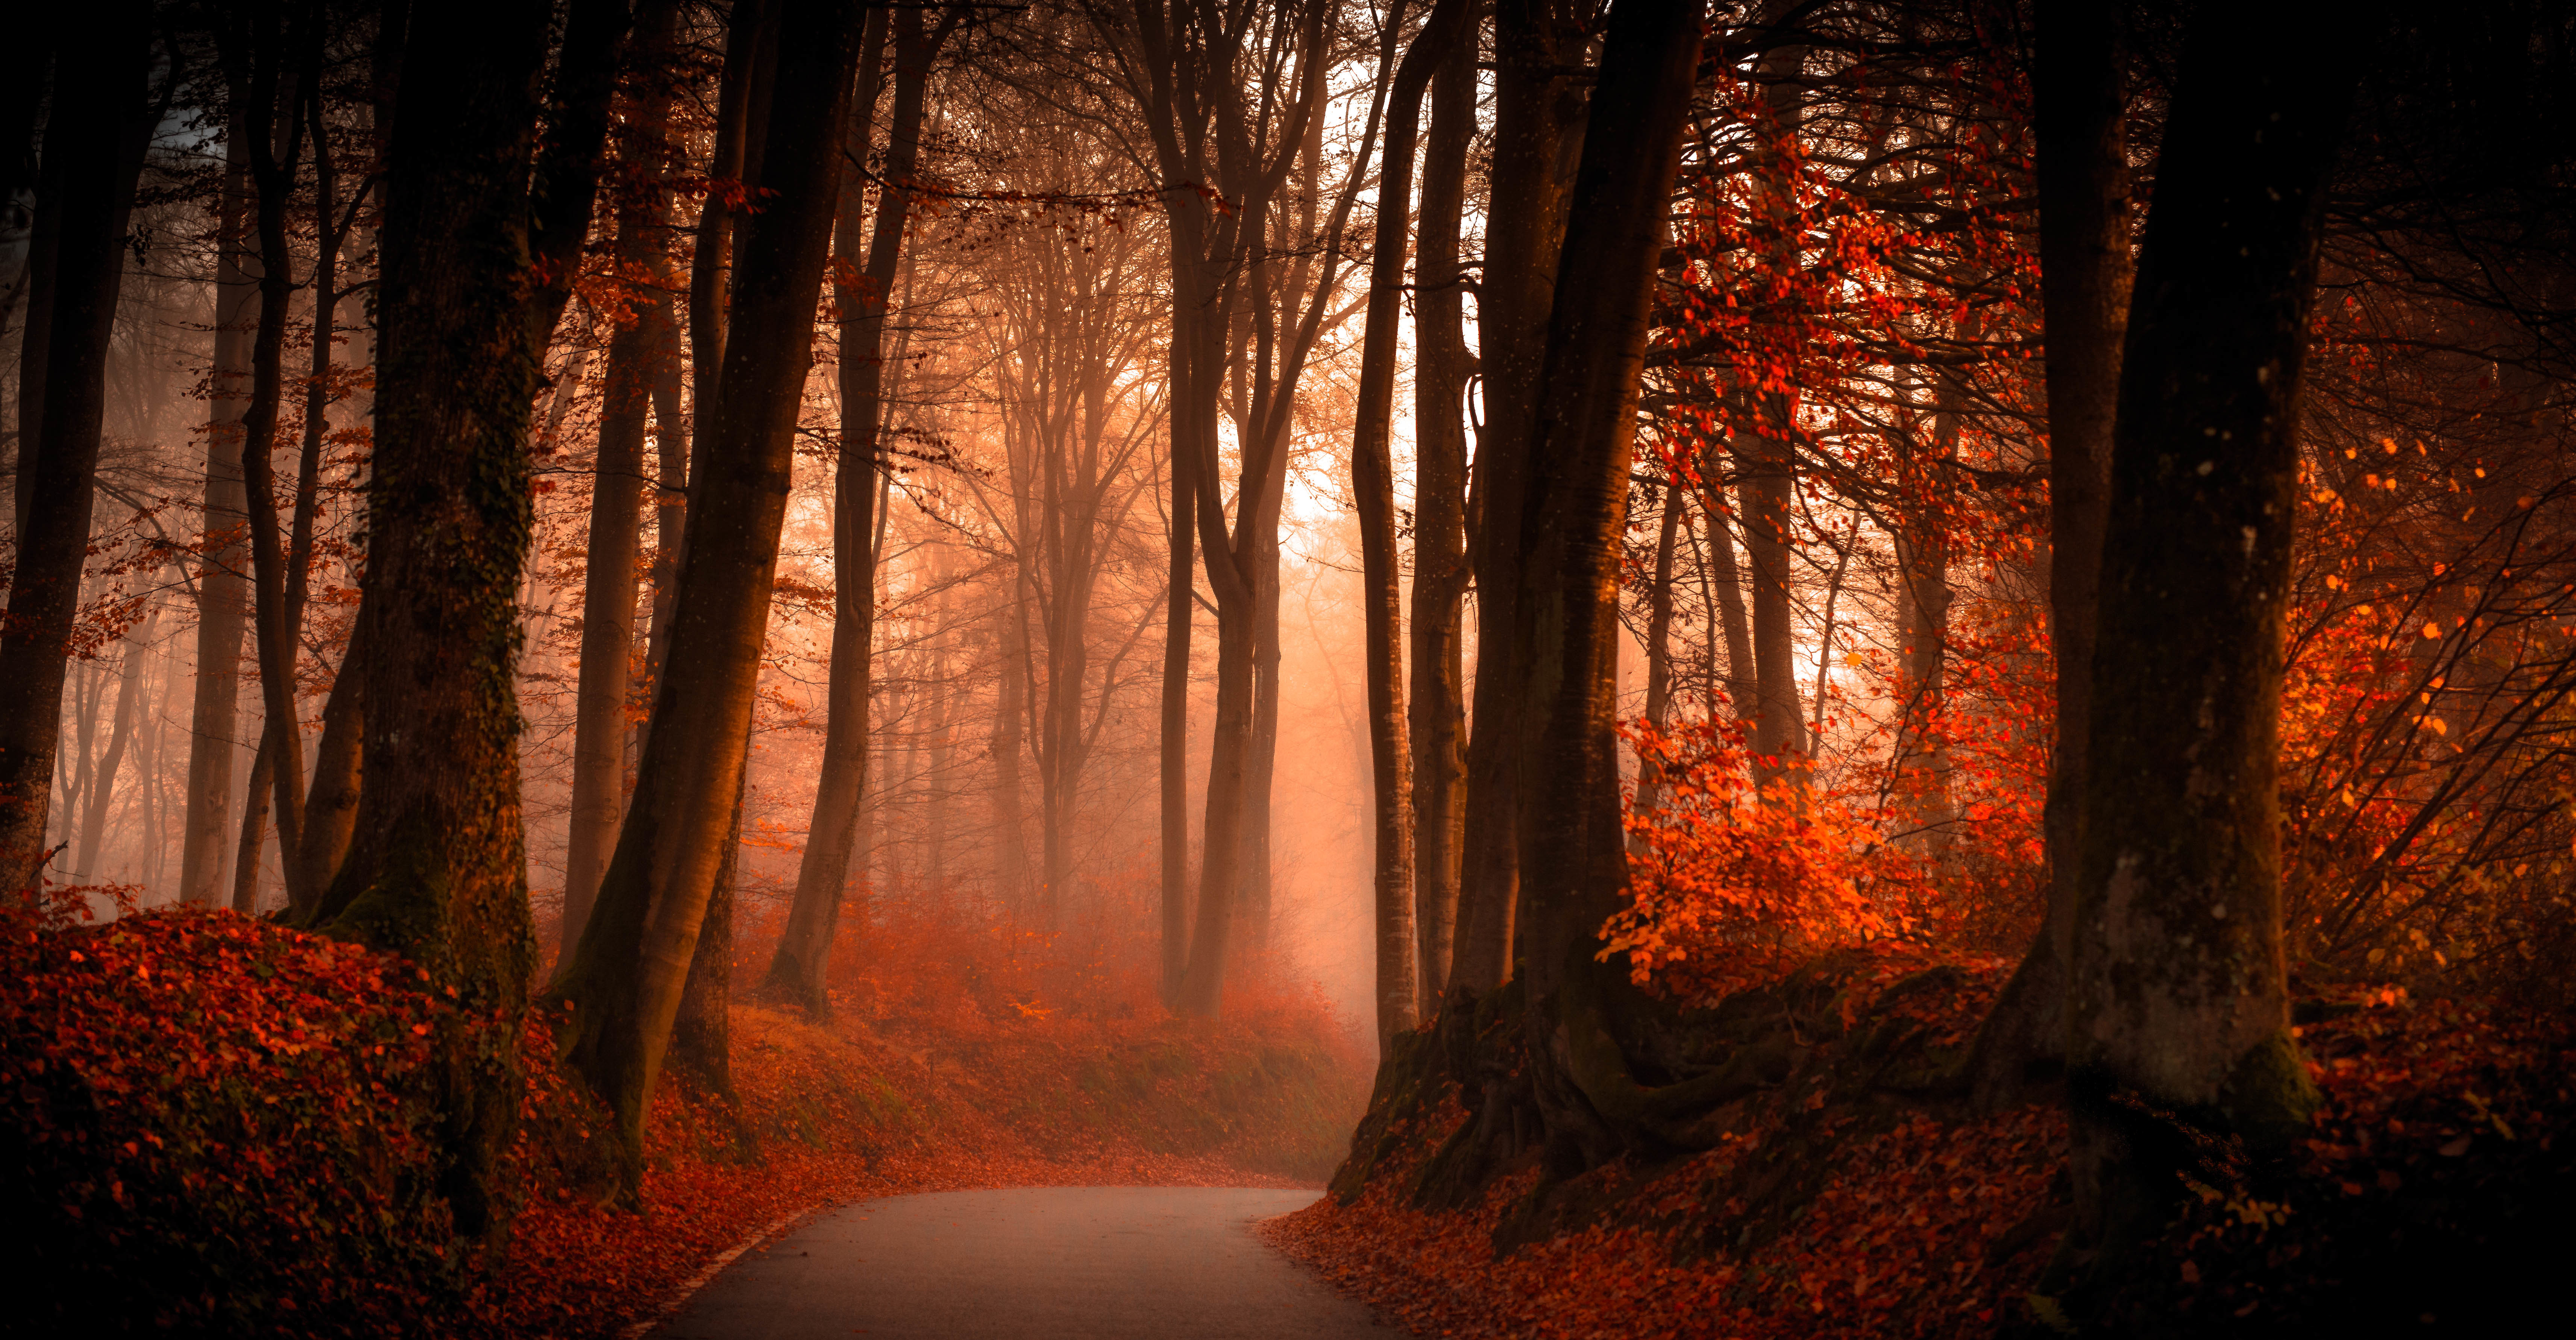 Скачать обои бесплатно Природа, Осень, Дорога, Лес, Дерево, Туман, Сделано Человеком картинка на рабочий стол ПК